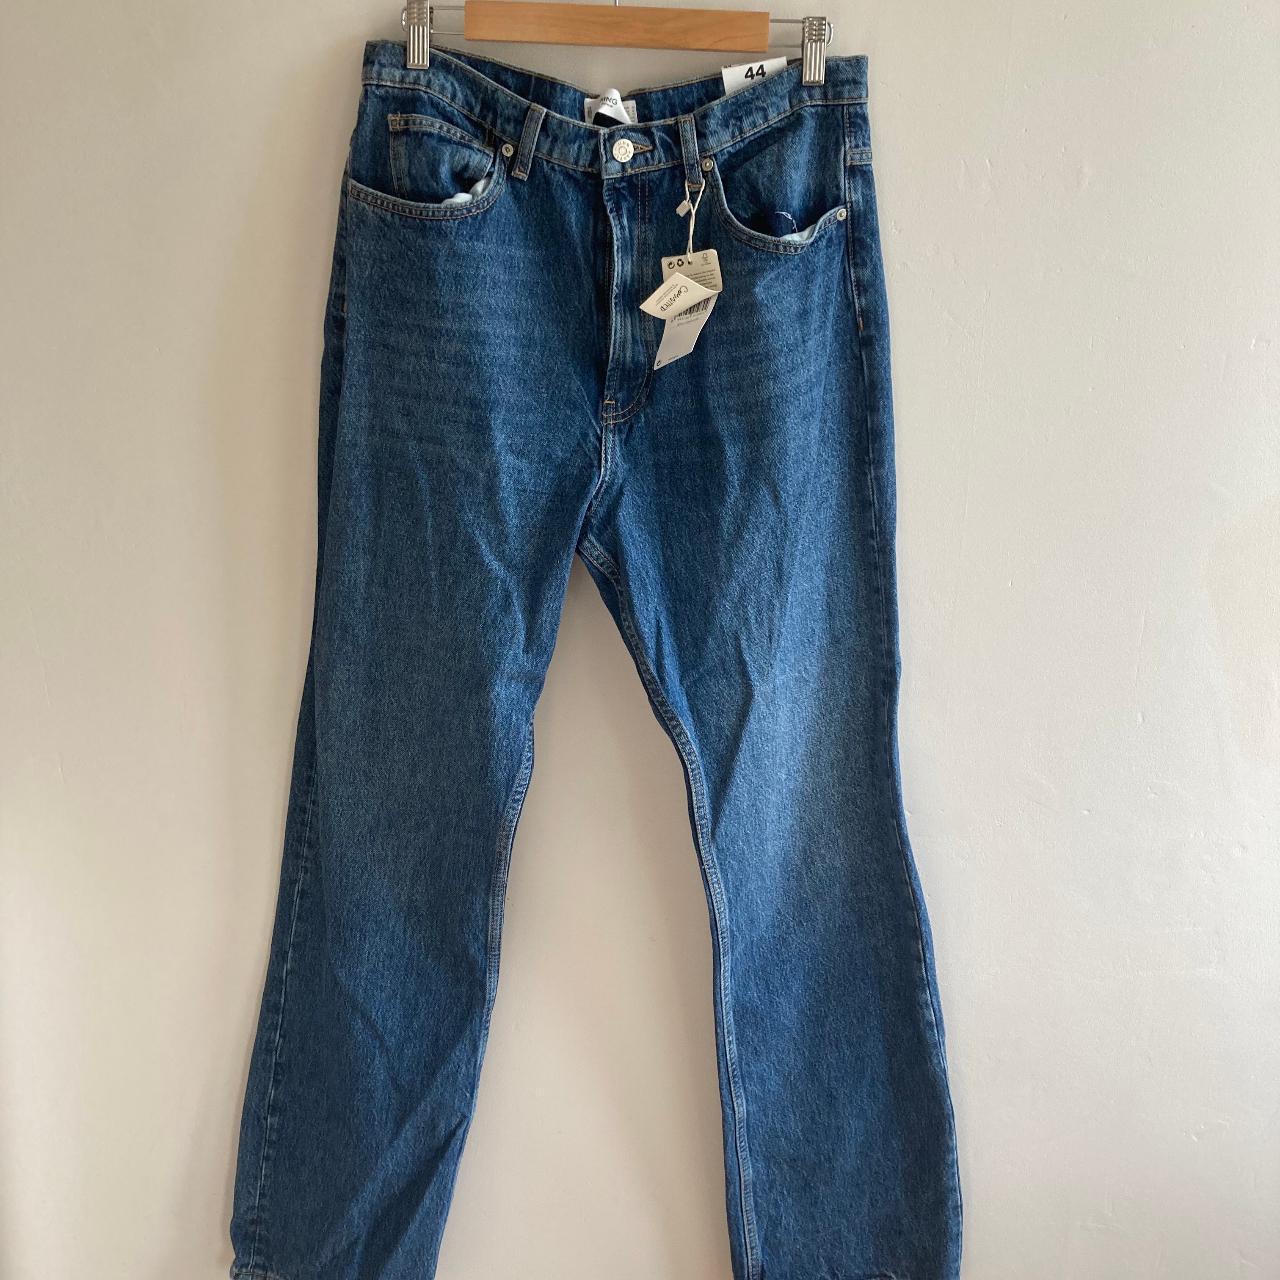 MANGO High waist regular flare jeans, UK 16 Never... - Depop